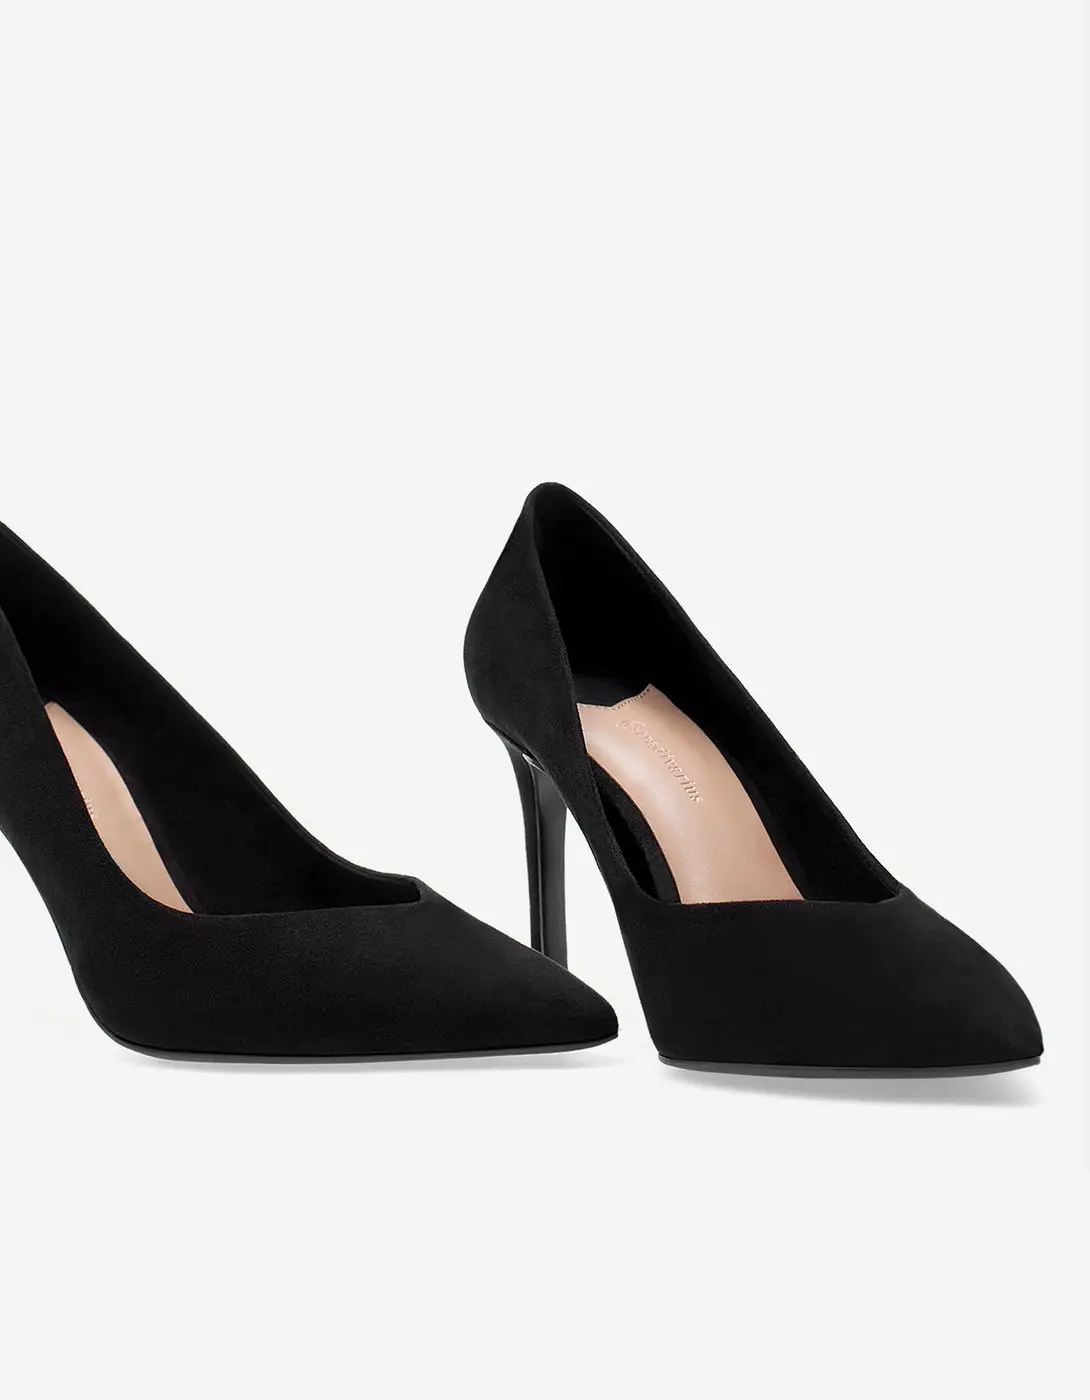 Narrow heel court shoes. (stradivarius.com)